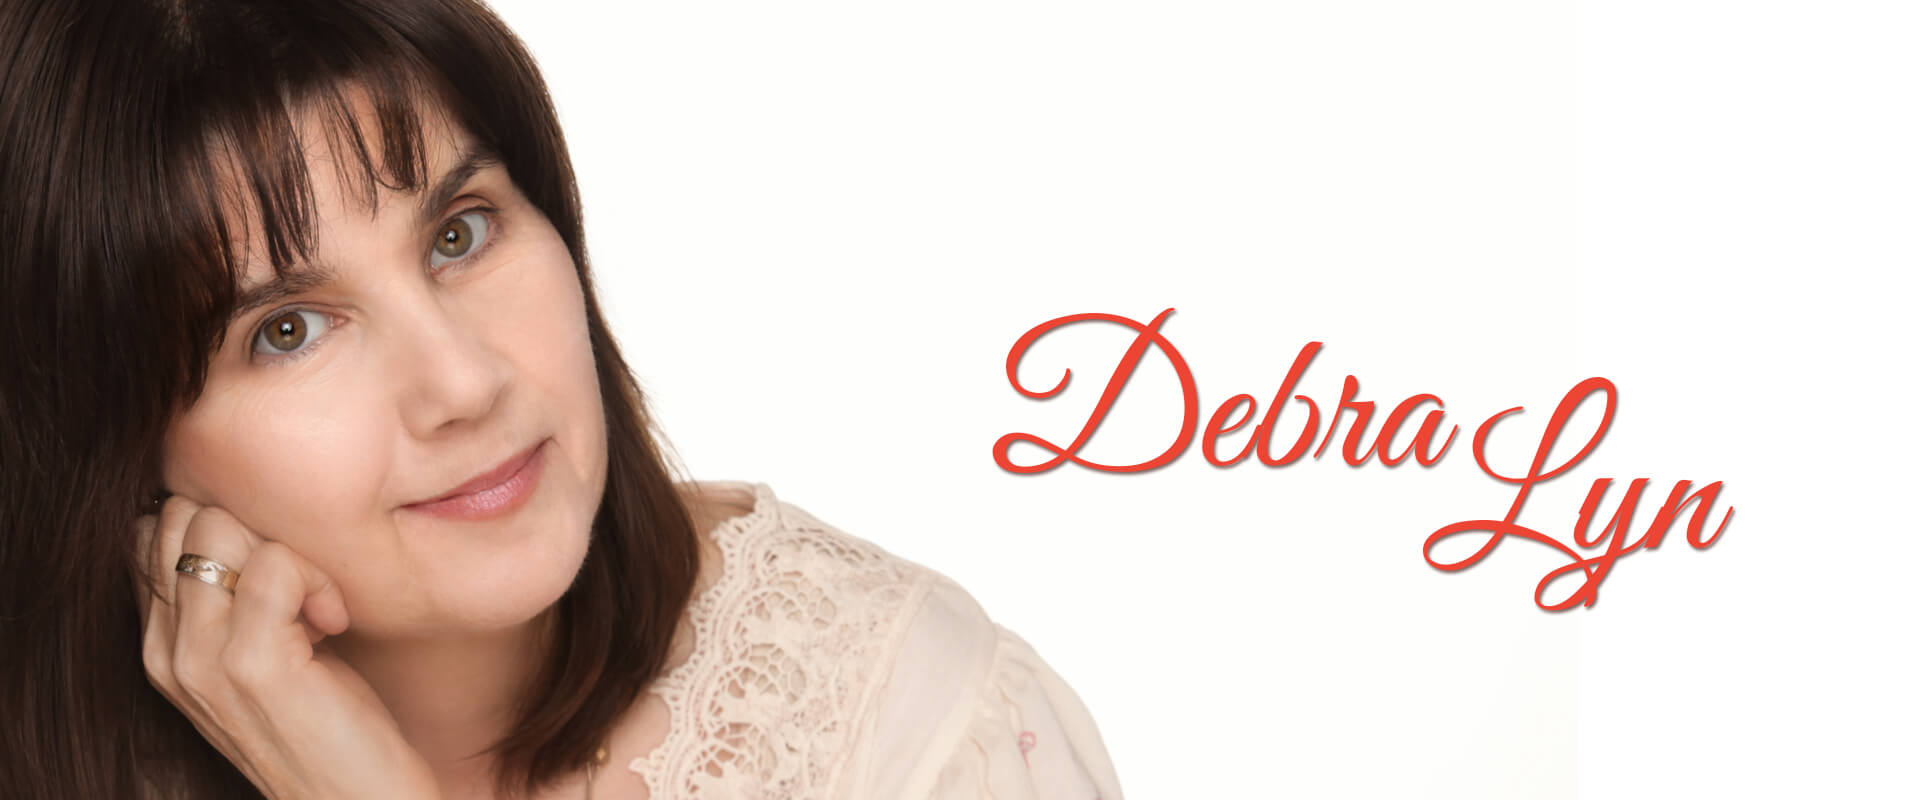 Debra Lyn-Palette Records-Nashville-Singer-Songwriter